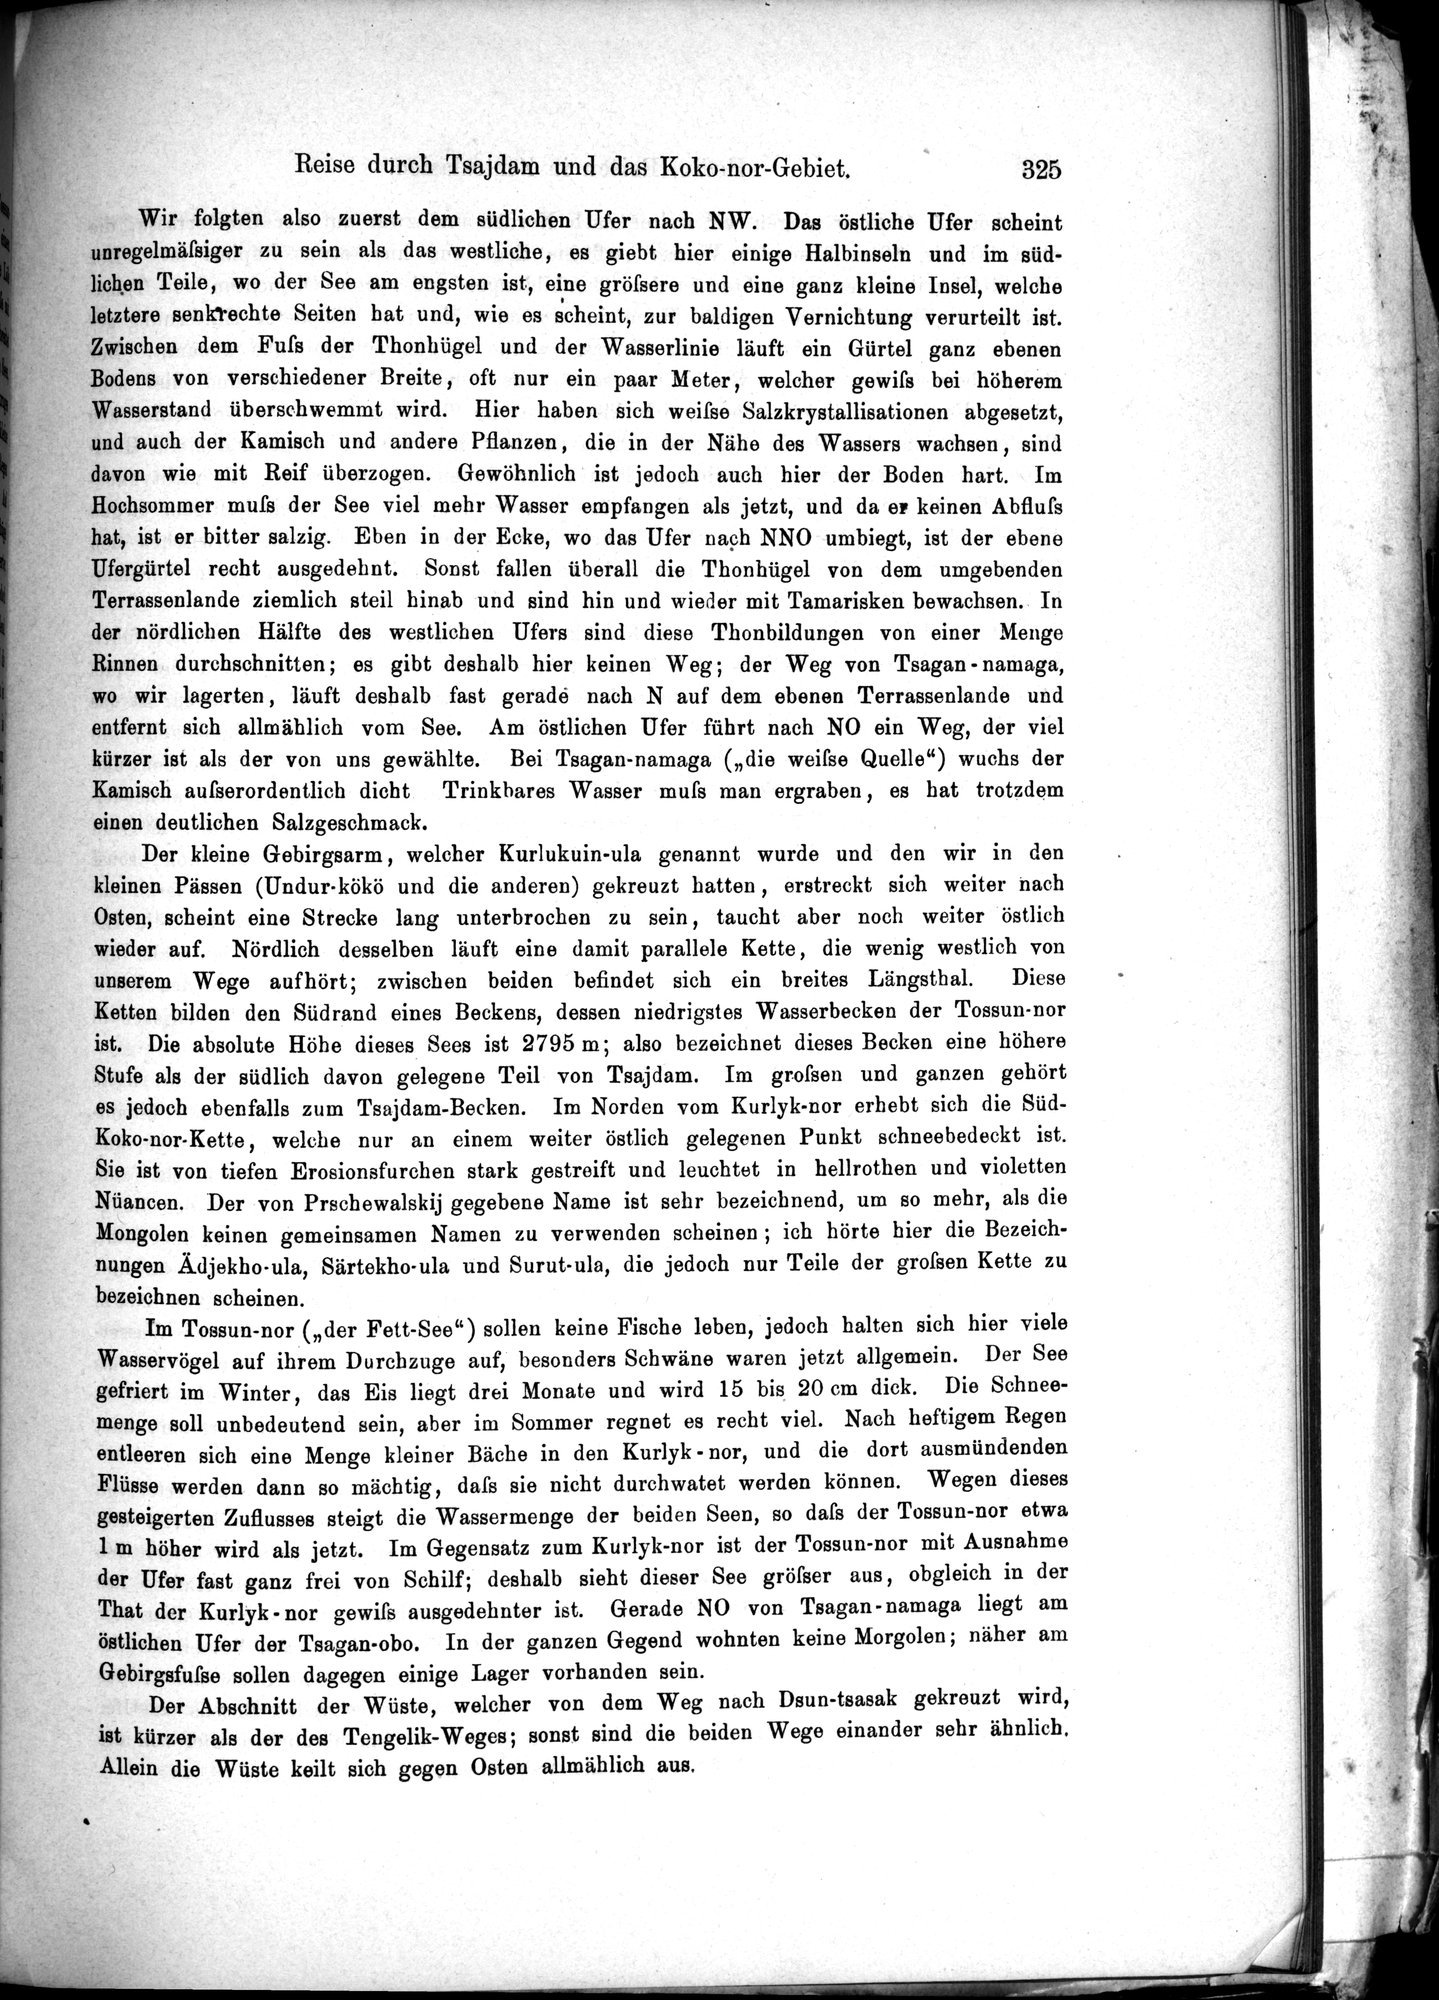 Die Geographische-Wissenschaftlichen Ergebnisse meiner Reisen in Zentralasien, 1894-1897 : vol.1 / Page 337 (Grayscale High Resolution Image)